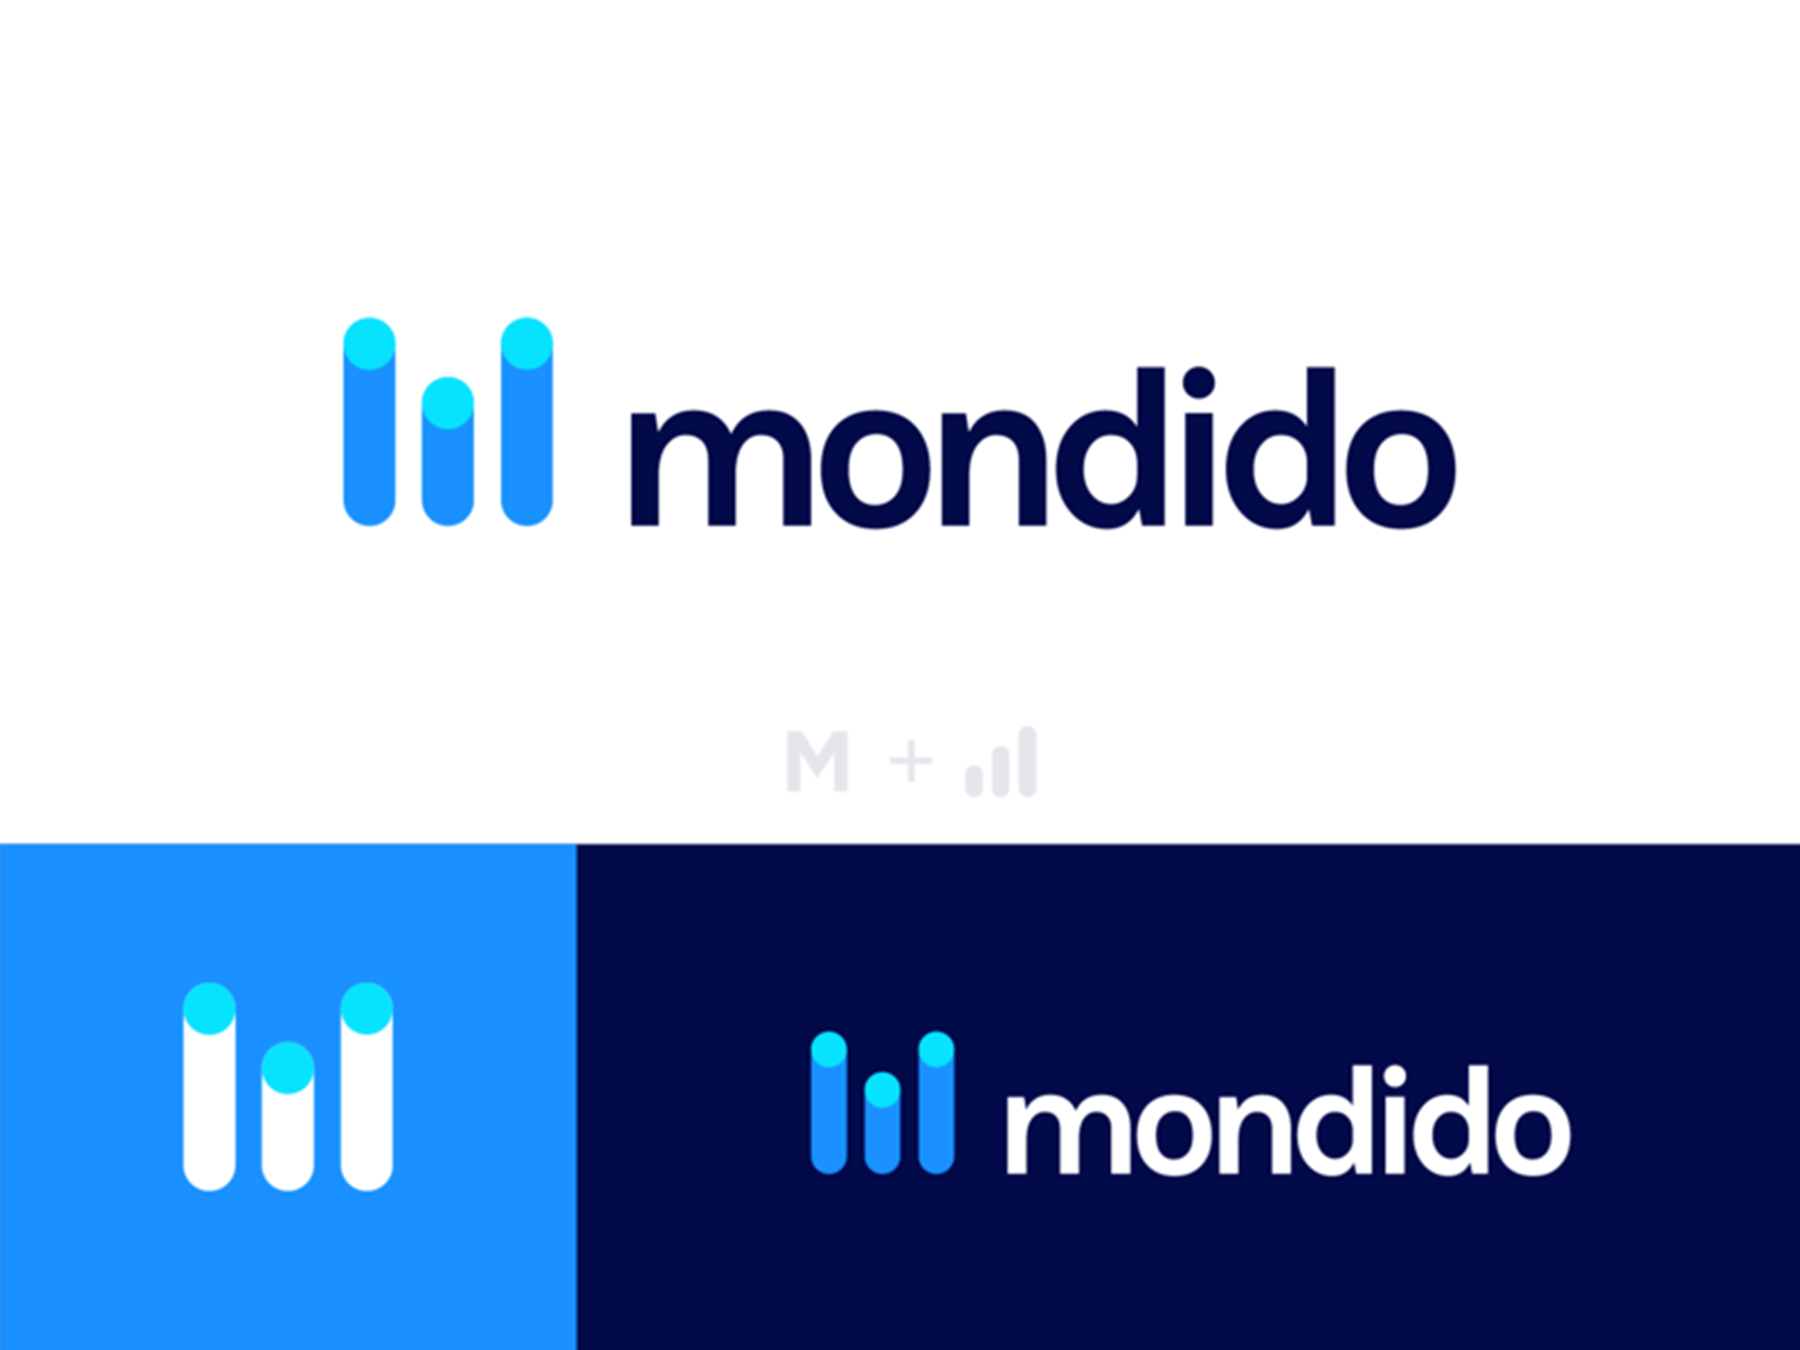 shaded logos